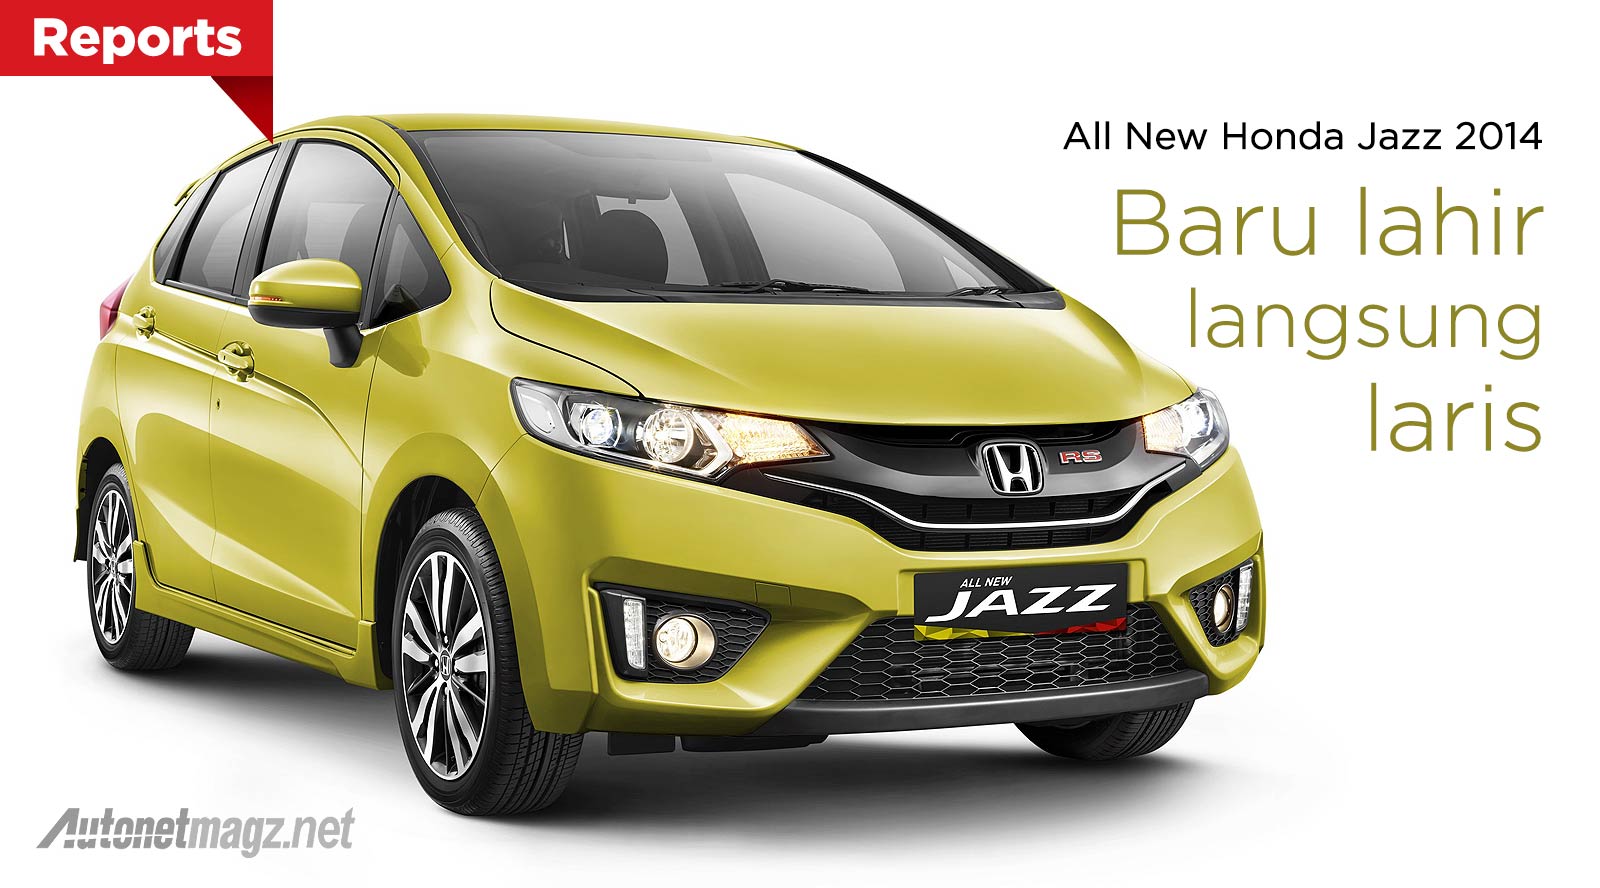 Honda, Data penjualan All New Honda Jazz baru tahun 2014: Penjualan Honda Jazz Alami Peningkatan di Bulan Juli 2014